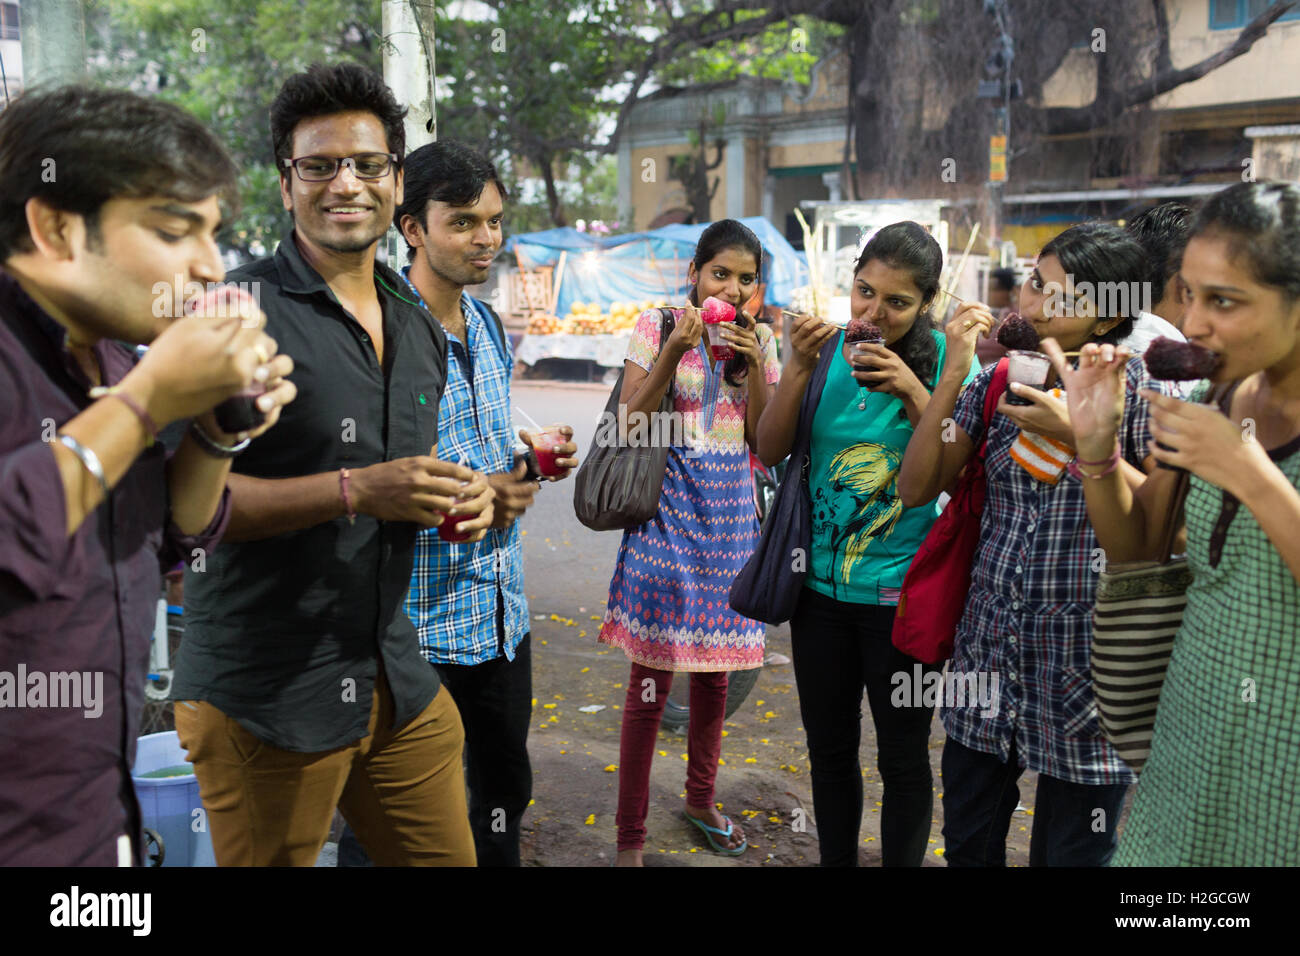 Groupe de jeunes Indiens de manger de la glace rasée aussi connu comme la glace Gola à Hyderabad, Inde Banque D'Images